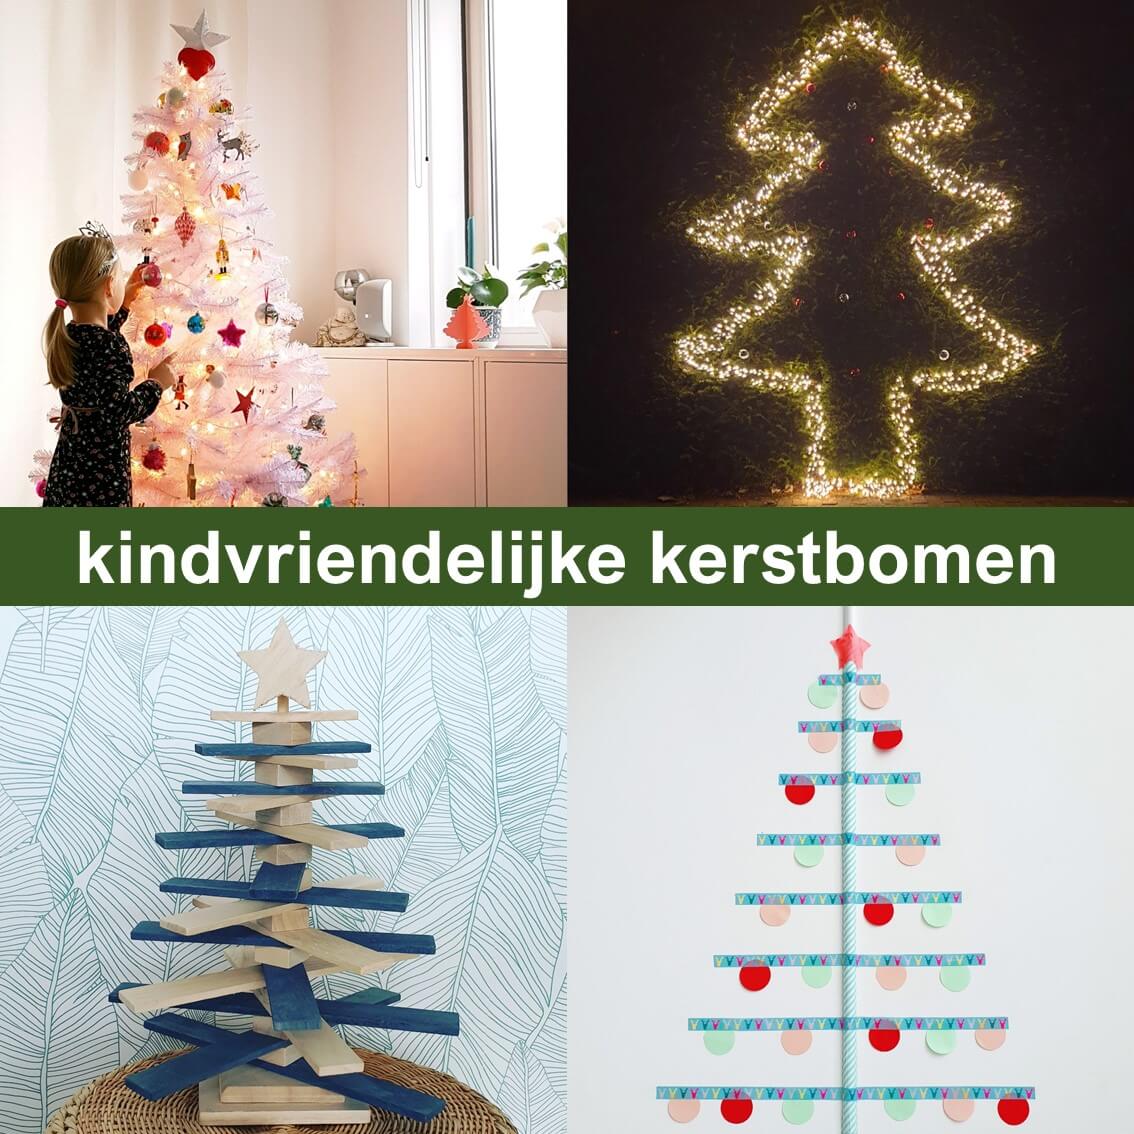 Hilarisch Bedankt Vervelen Ideeën voor een kindvriendelijke kerstboom, ook duurzame keuzes Leuk met  kids